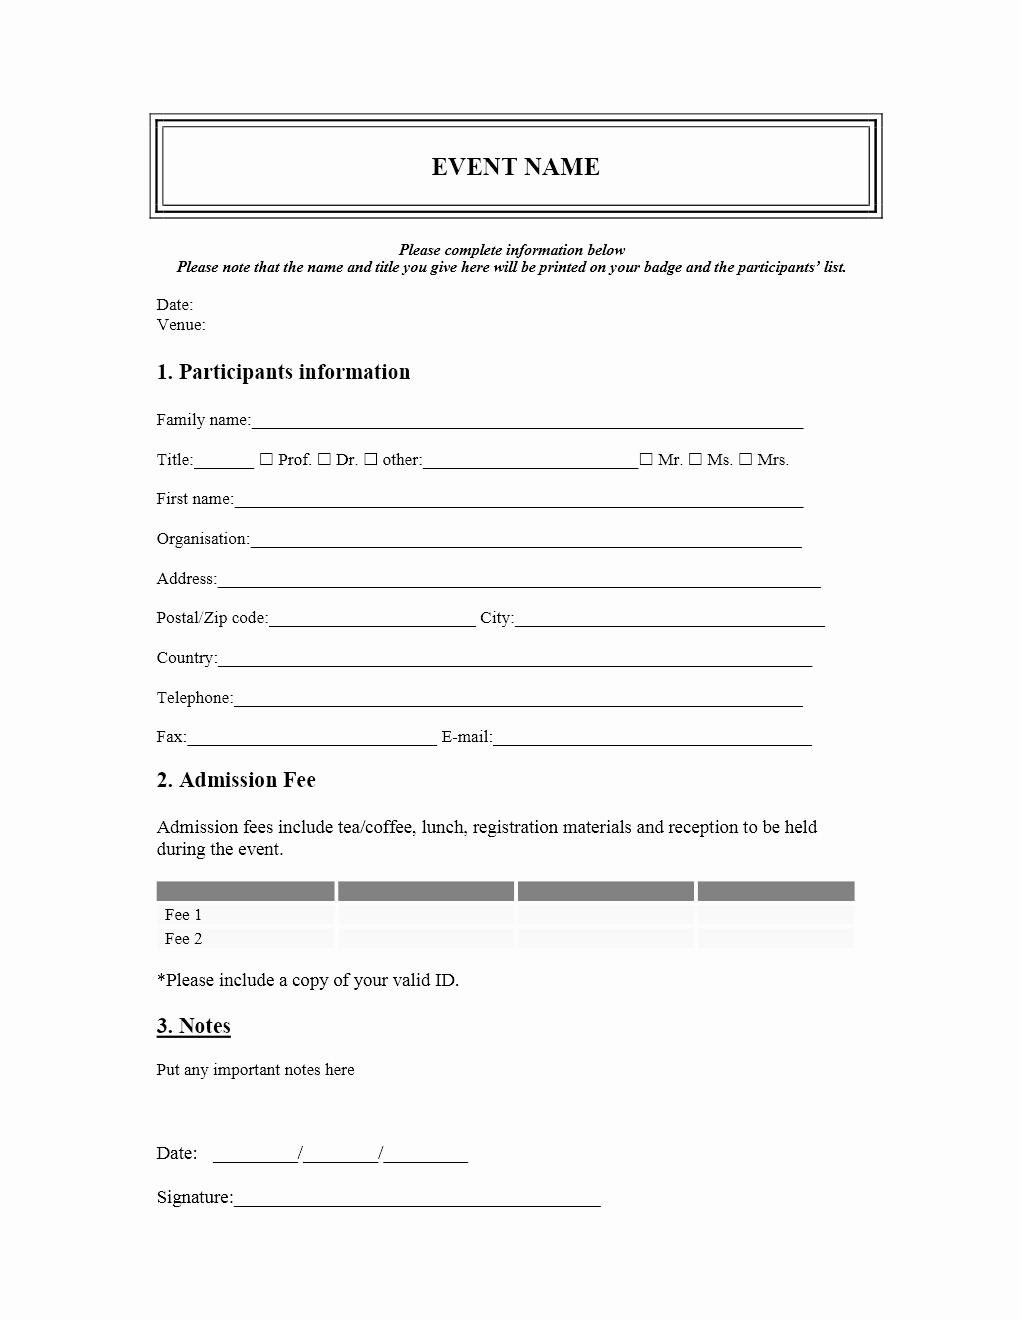 Registration form Template Word Lovely event Registration form